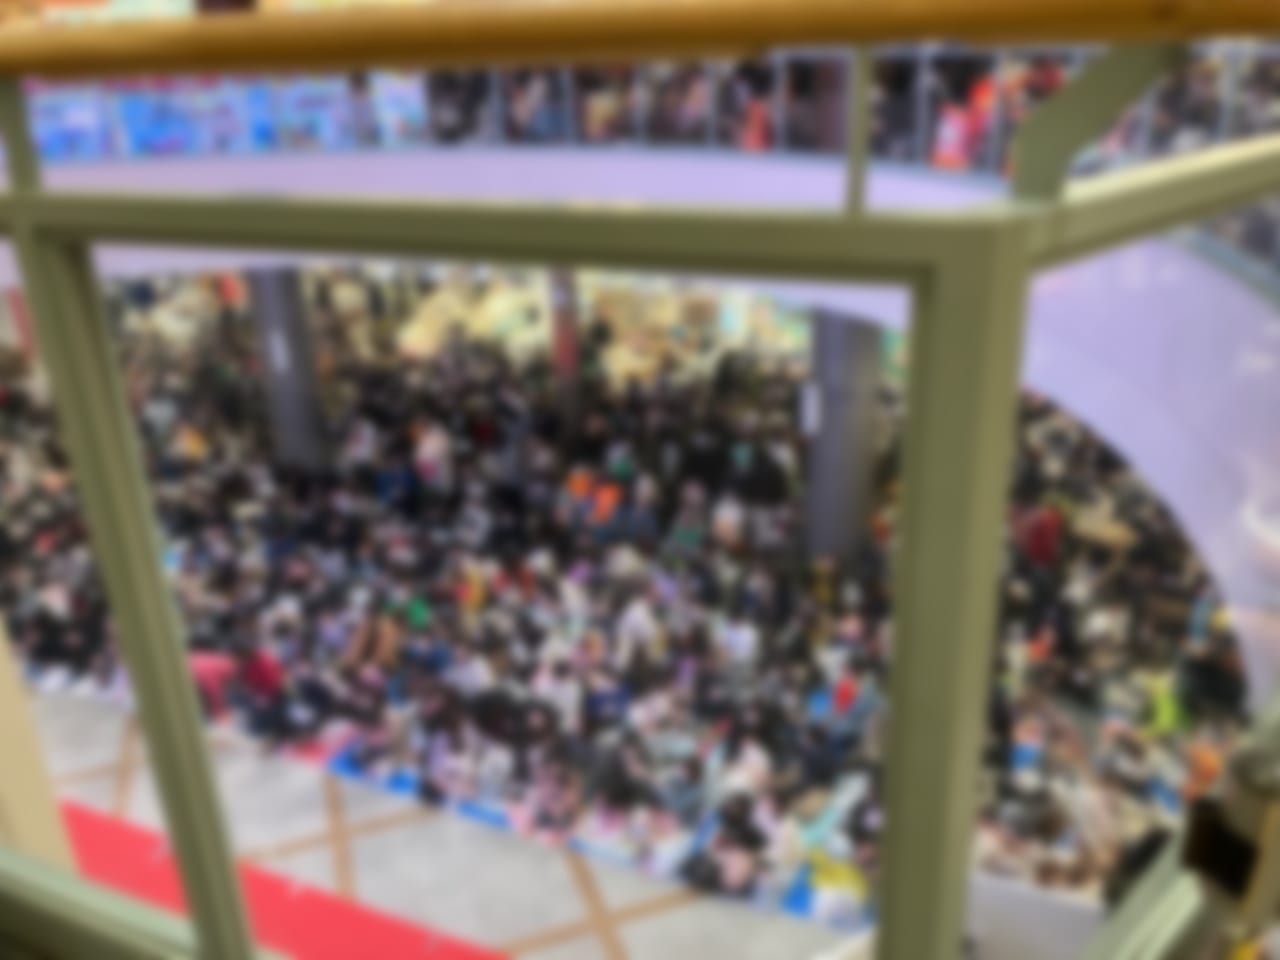 ちびっ子集まれ！ 「アリオ札幌」で仮面ライダーギーツとアンパンマンに会えるよ。なんと観覧は無料です。